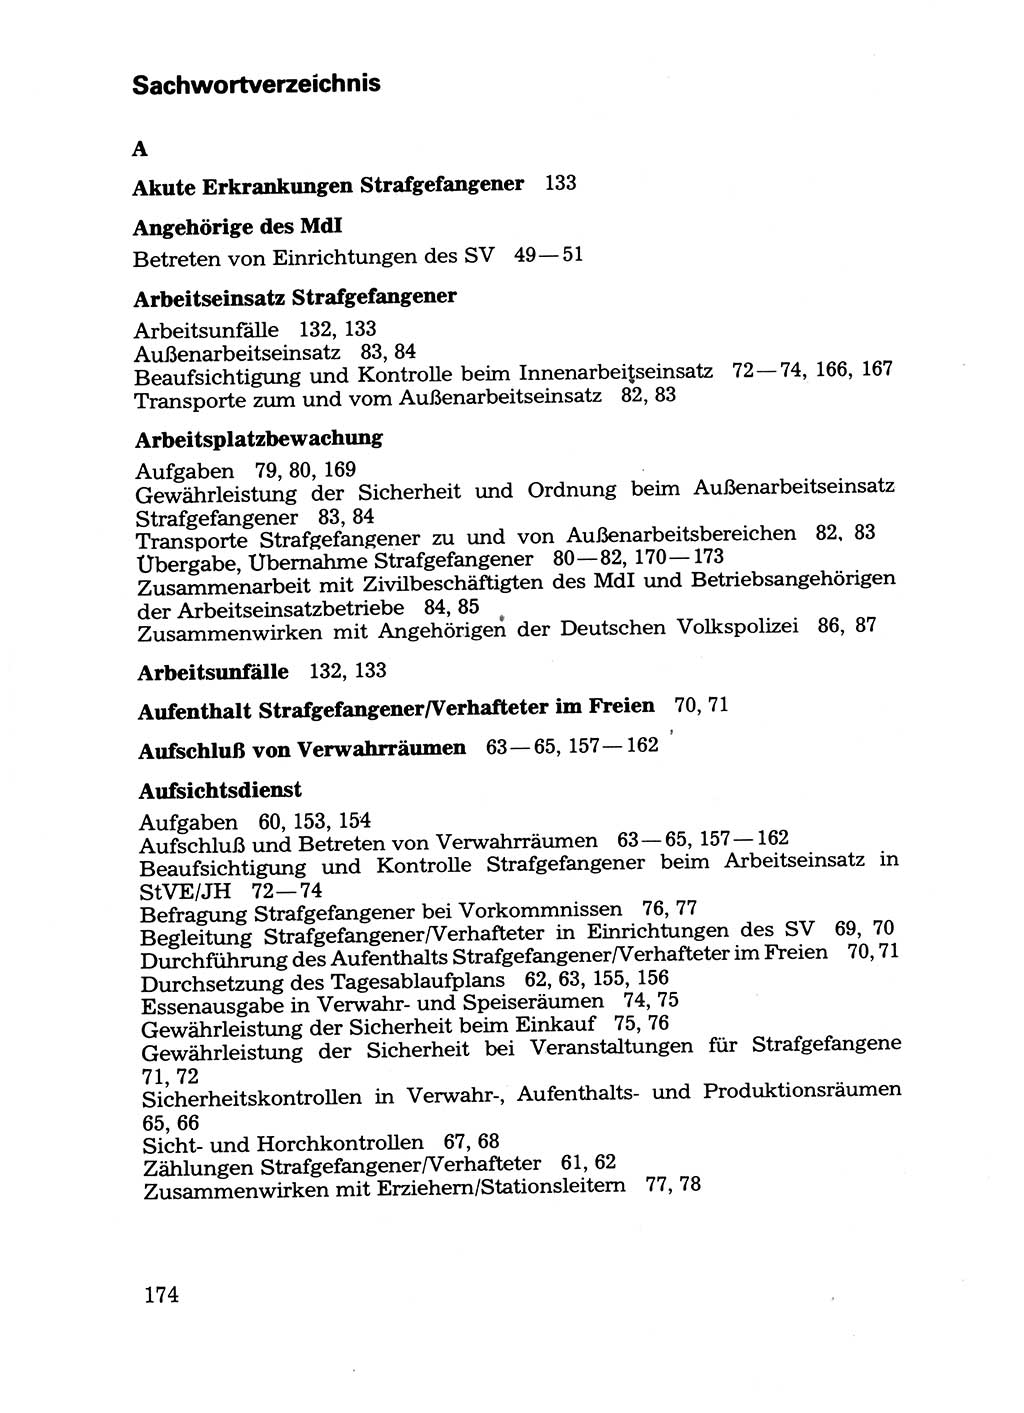 Handbuch für operative Dienste, Abteilung Strafvollzug (SV) [Ministerium des Innern (MdI) Deutsche Demokratische Republik (DDR)] 1981, Seite 174 (Hb. op. D. Abt. SV MdI DDR 1981, S. 174)